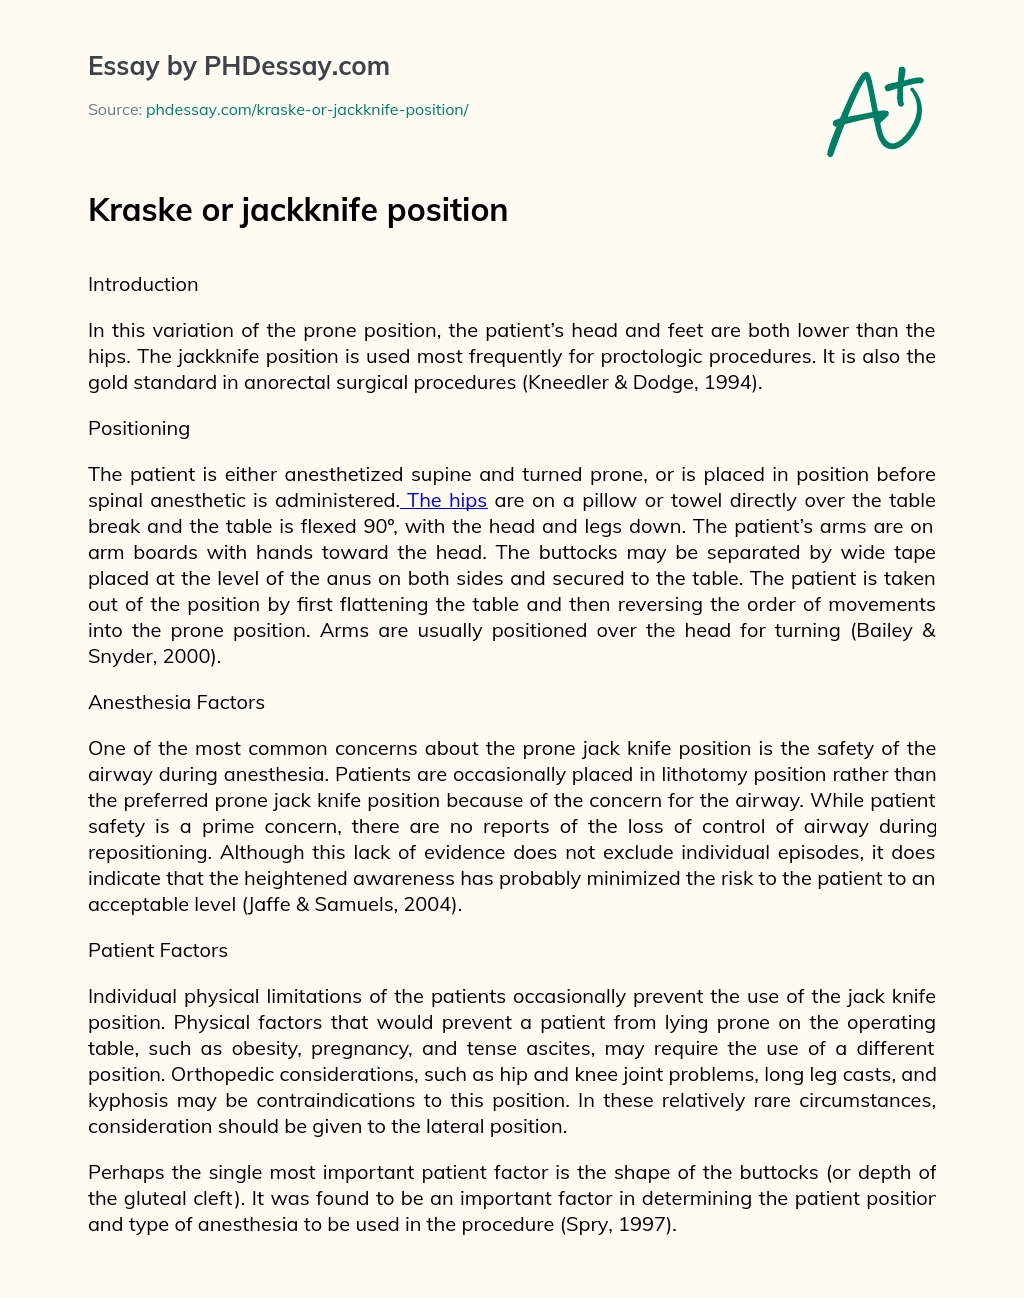 Kraske or jackknife position essay